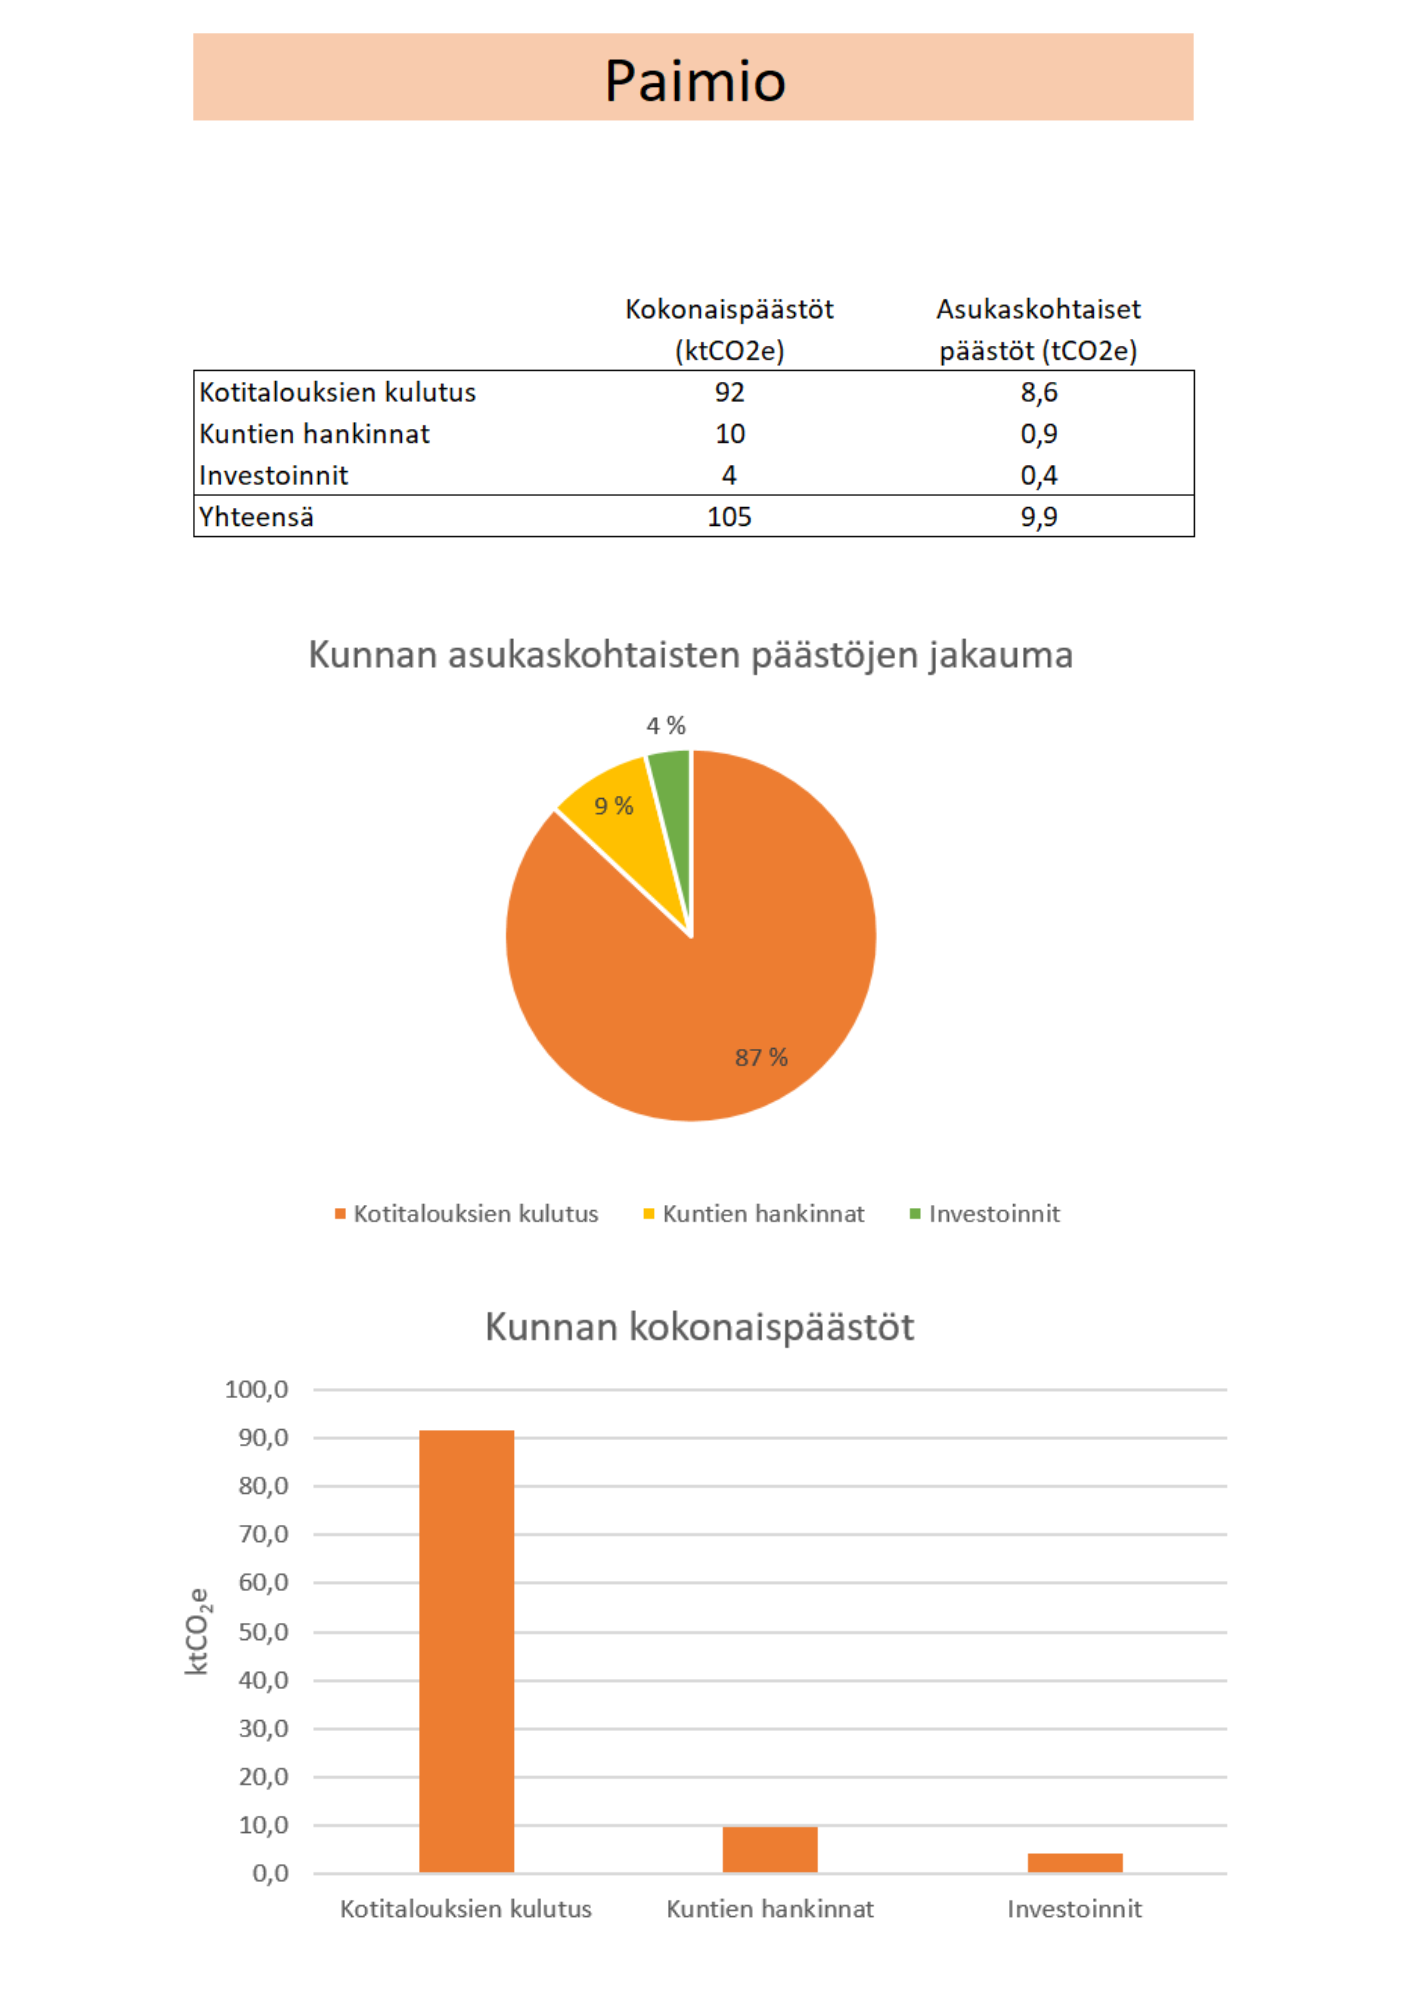 Kaaviossa esitetään Paimion kasvihuonekaasupäästöjen jakautuminen kotitalouksien kulutuksen, kunnan hankintojen ja investointien kesken.